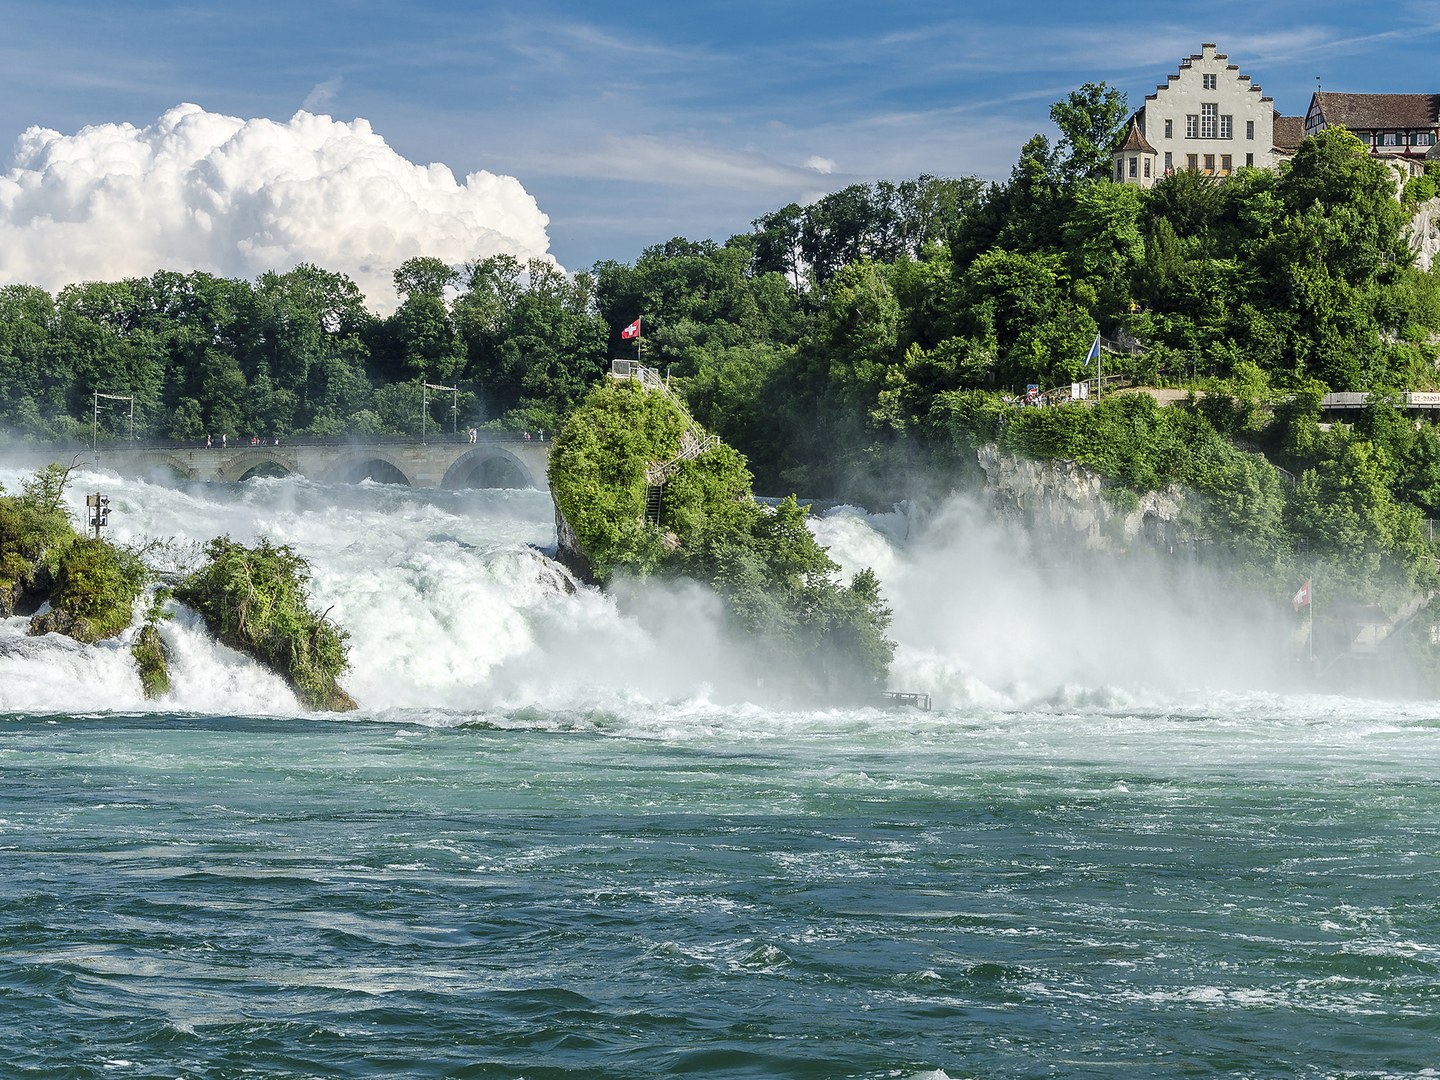 Thác nước Rhine có độ cao vừa phải, khoảng 23m, thuộc thành phố Schaffhausen của Thụy Sĩ. Sông Rhine bị một dãy đá ngầm chắn ngang và dòng nước vượt qua đá đổ xuống trở thành thác nước ầm ầm tung bọt trắng xóa tuyệt đẹp.